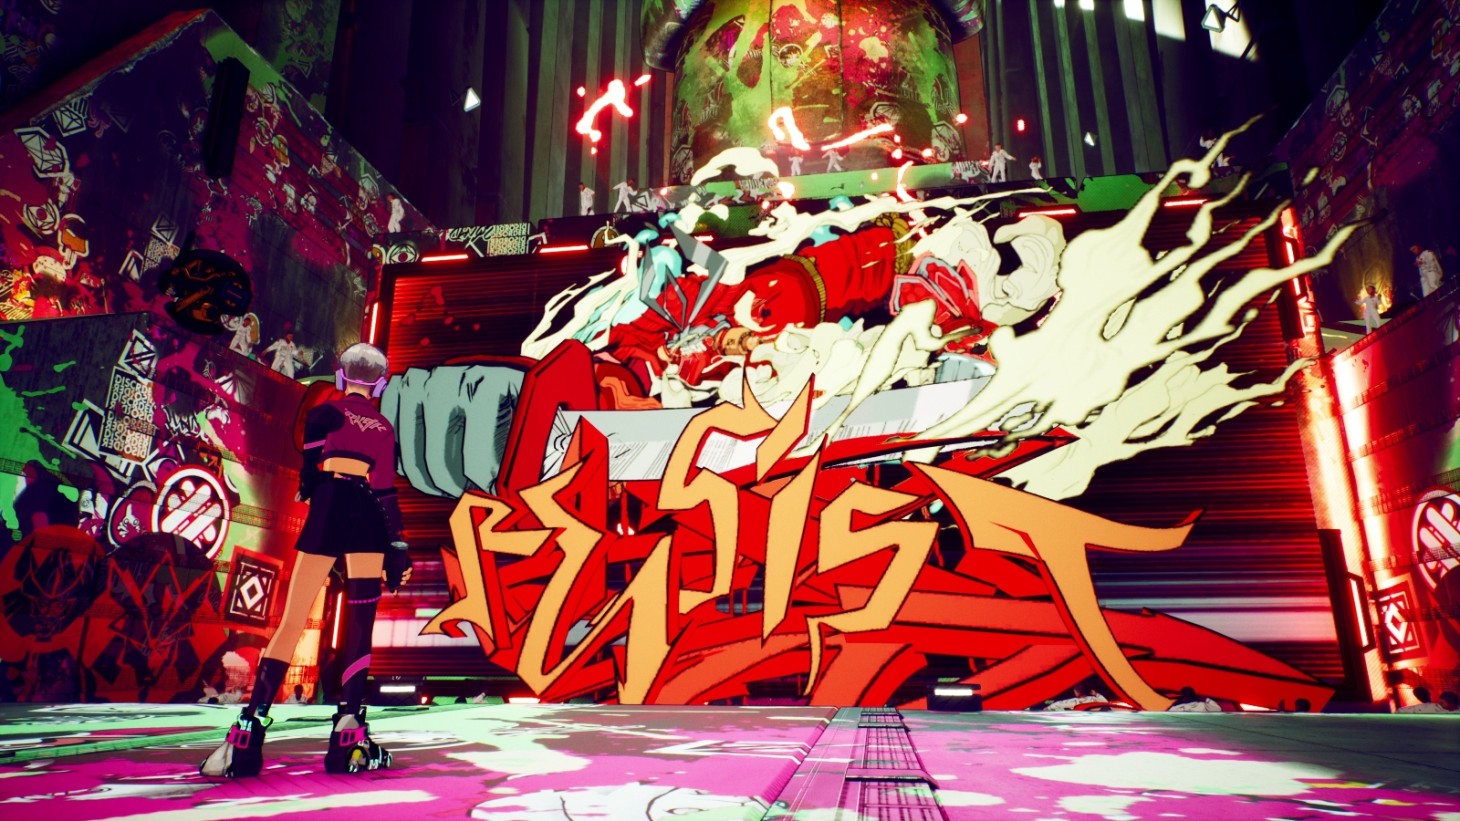 RKGK ist ein von Anime inspirierter Graffiti-Action-Plattformer, der dieses Jahr erscheint